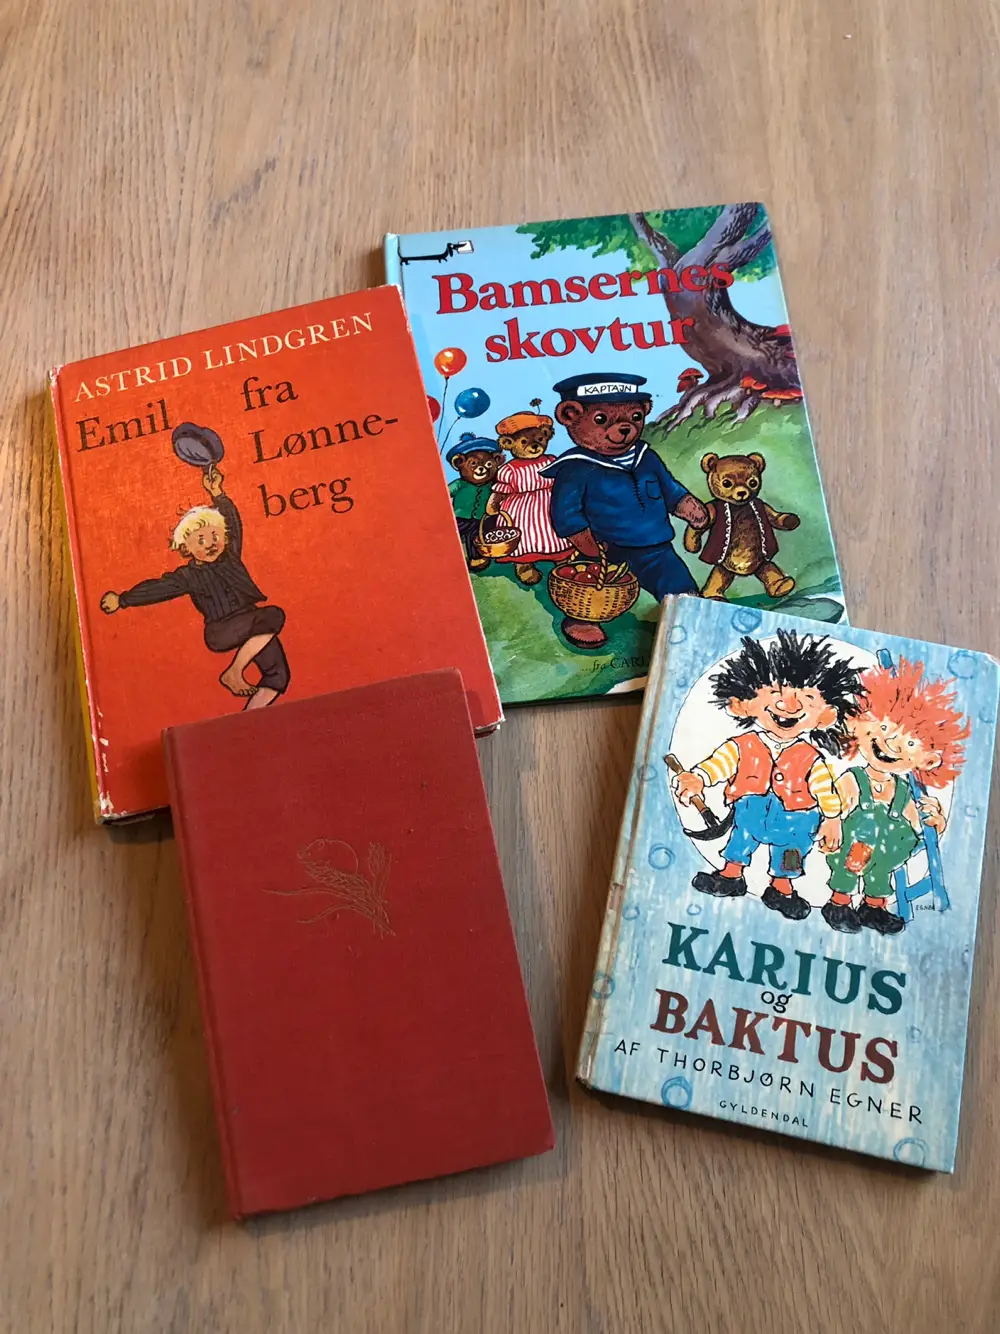 Karius og Baktus Bøger